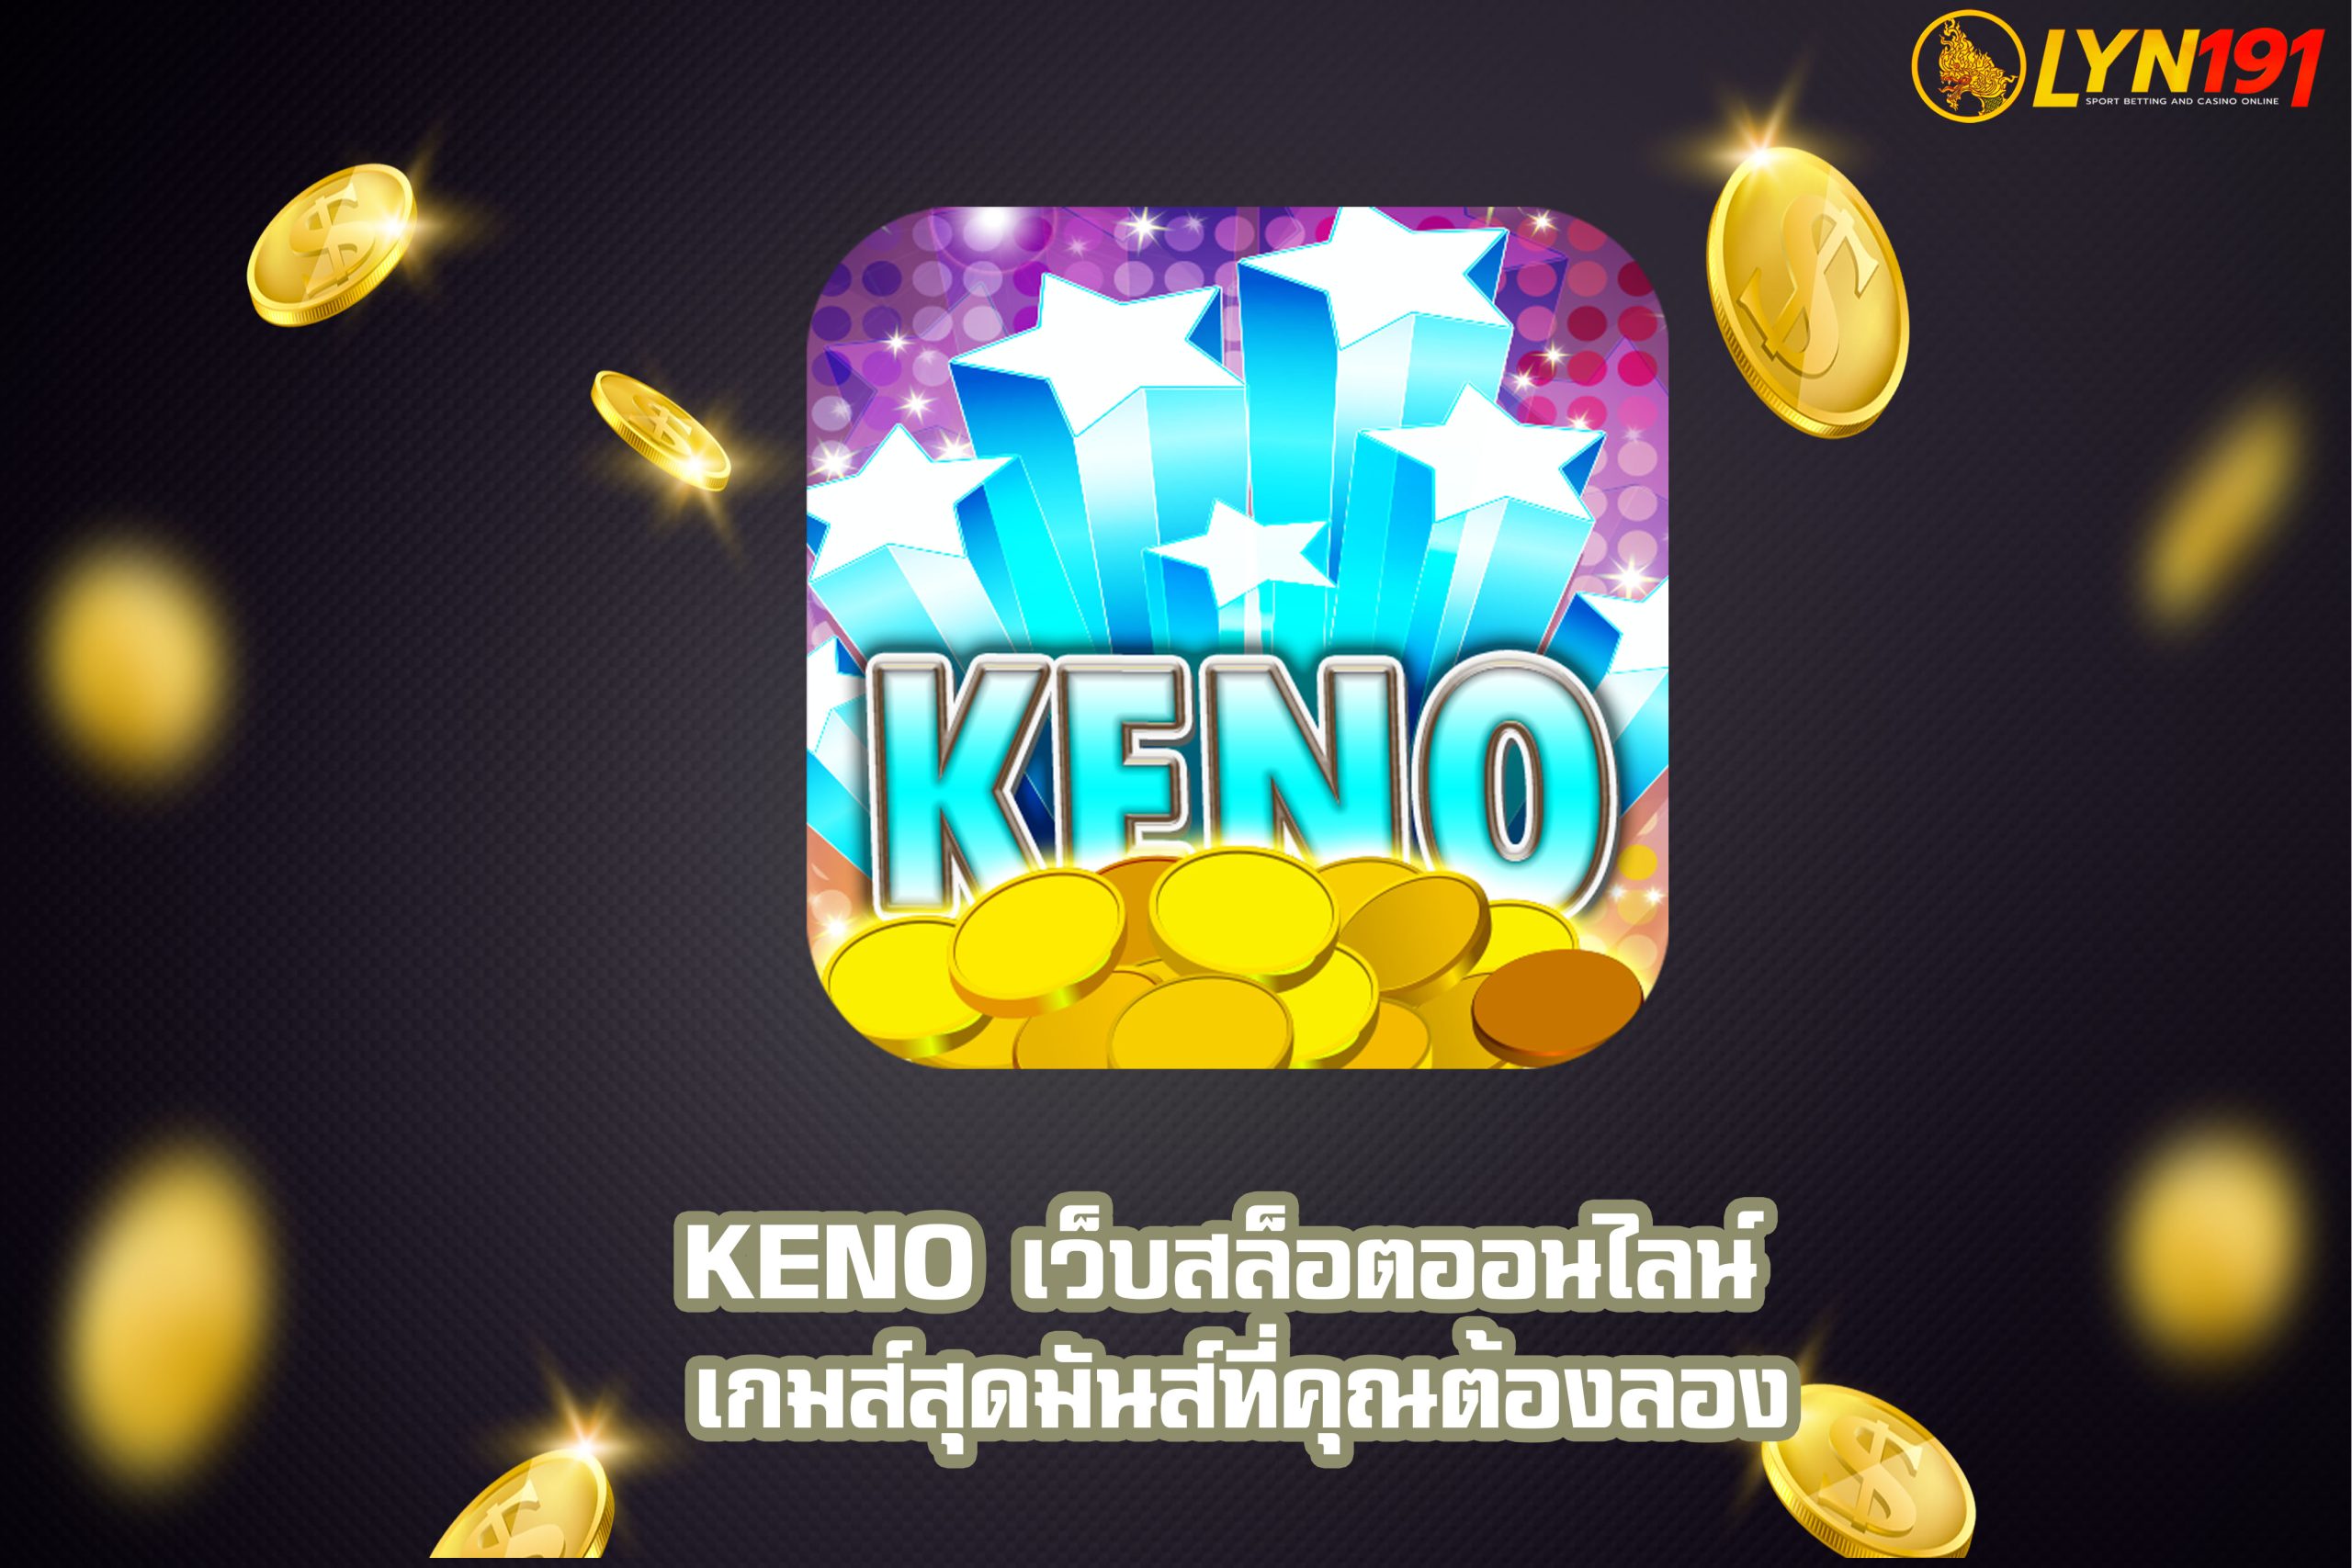 KENO เว็บสล็อตออนไลน์ เกมส์สุดมันส์ที่คุณต้องลอง